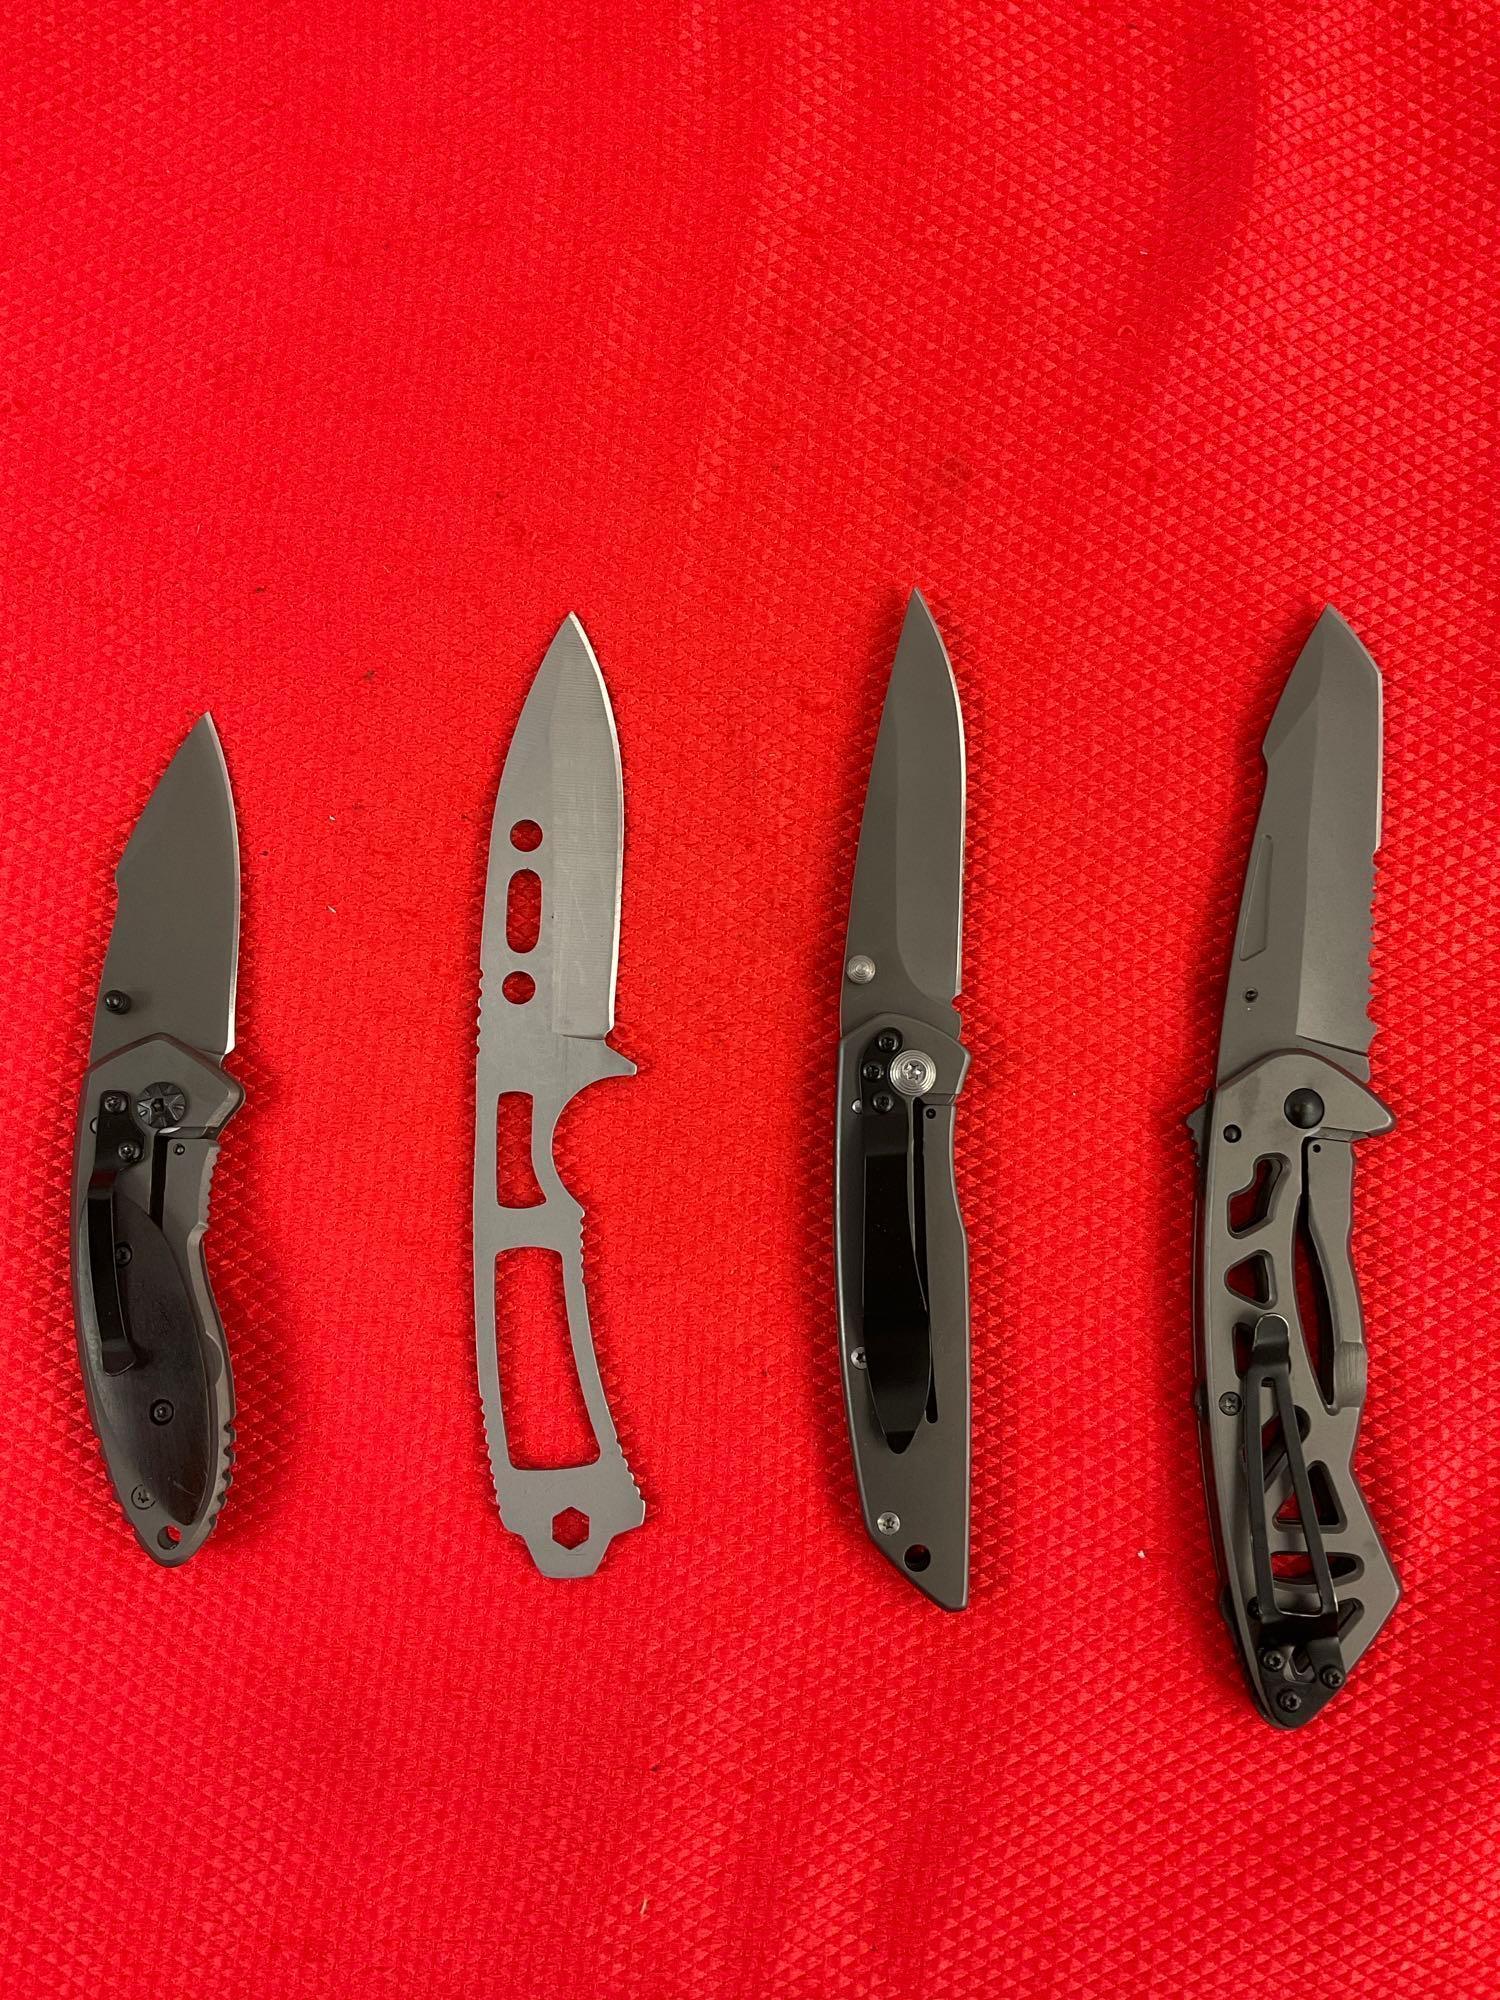 4 pcs Modern Buck Knife Assortment. 1x 870-2, 1x Csar-T 680, 1x DA14, 1x Unnumbered. NIB. See pics.